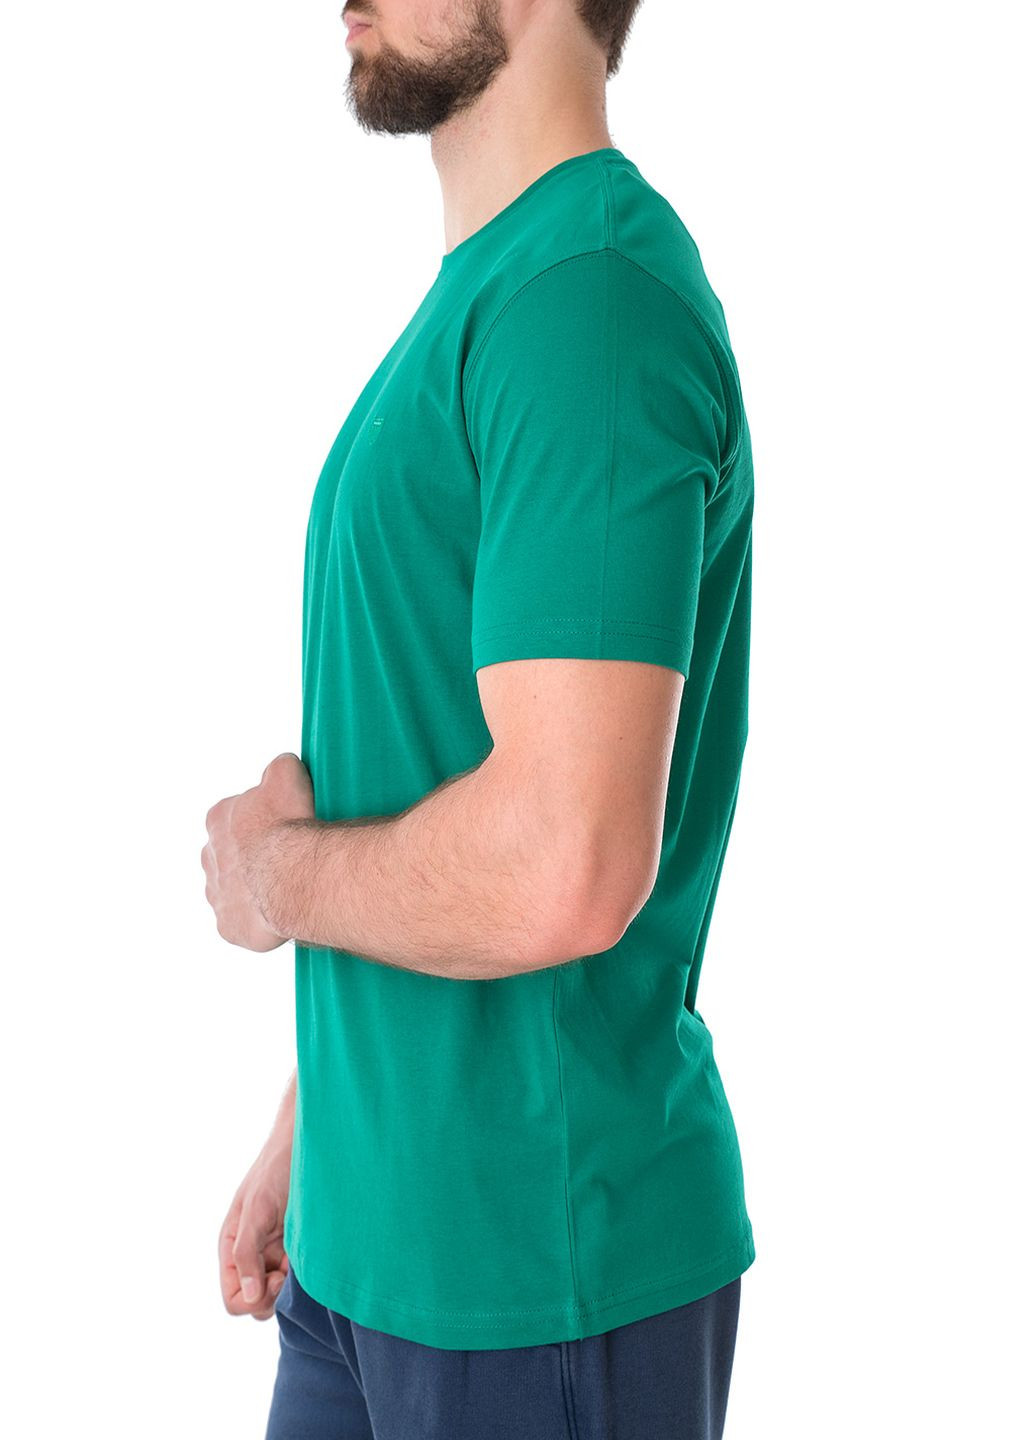 Зеленая футболка Basefield